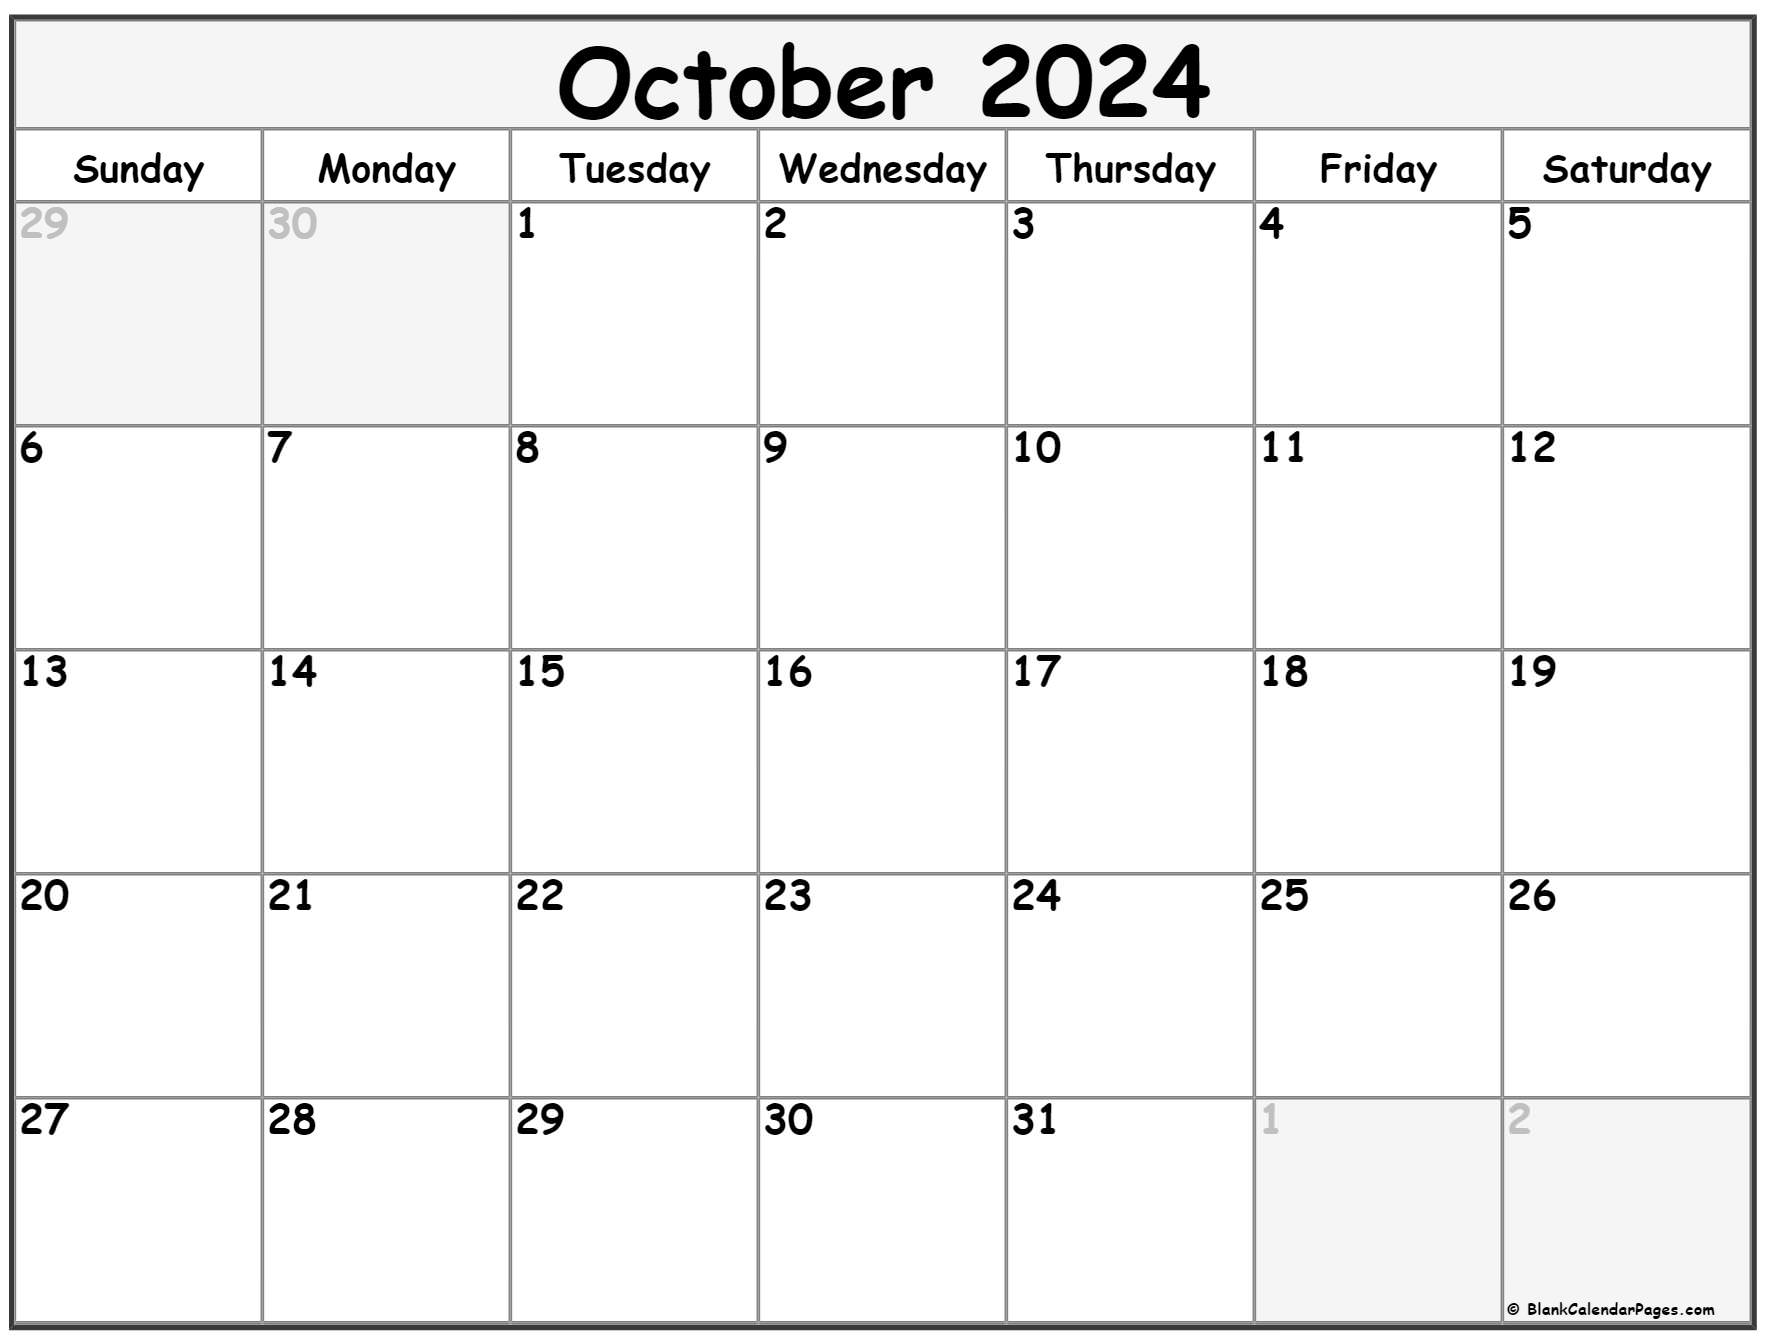 October 2022 calendar free printable calendar templates